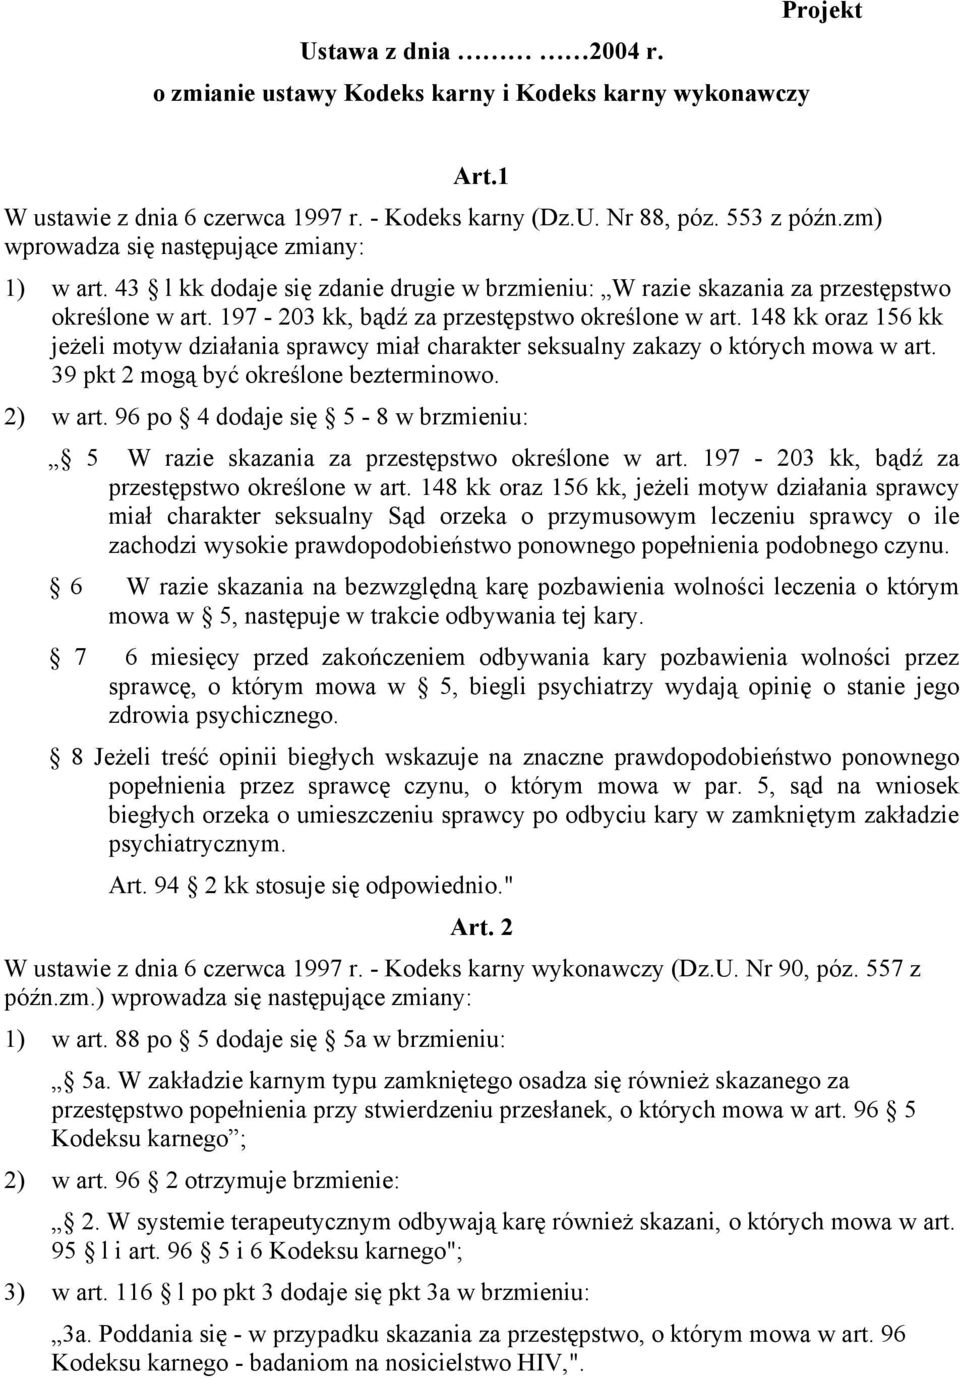 148 kk oraz 156 kk jeżeli motyw działania sprawcy miał charakter seksualny zakazy o których mowa w art. 39 pkt 2 mogą być określone bezterminowo. 2) w art.